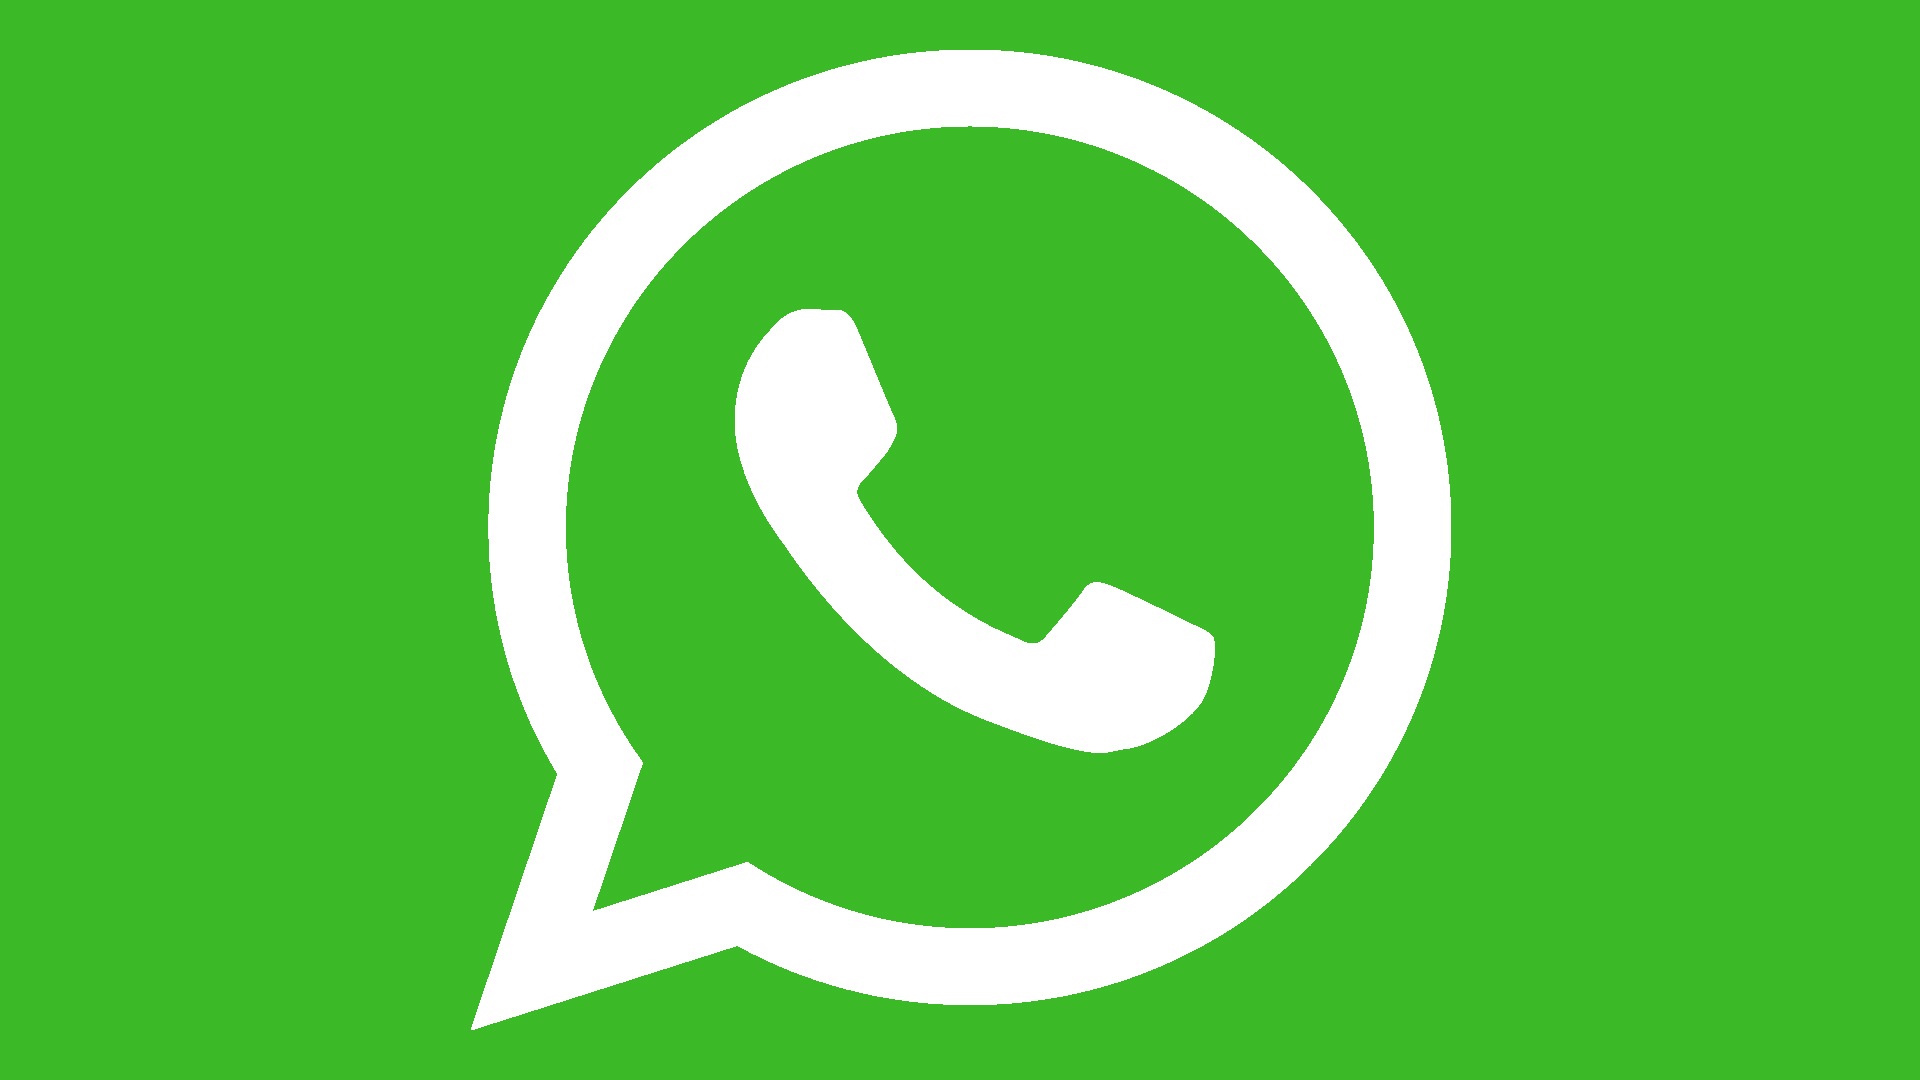 Whatsapp logo : histoire, signification et évolution, symbole